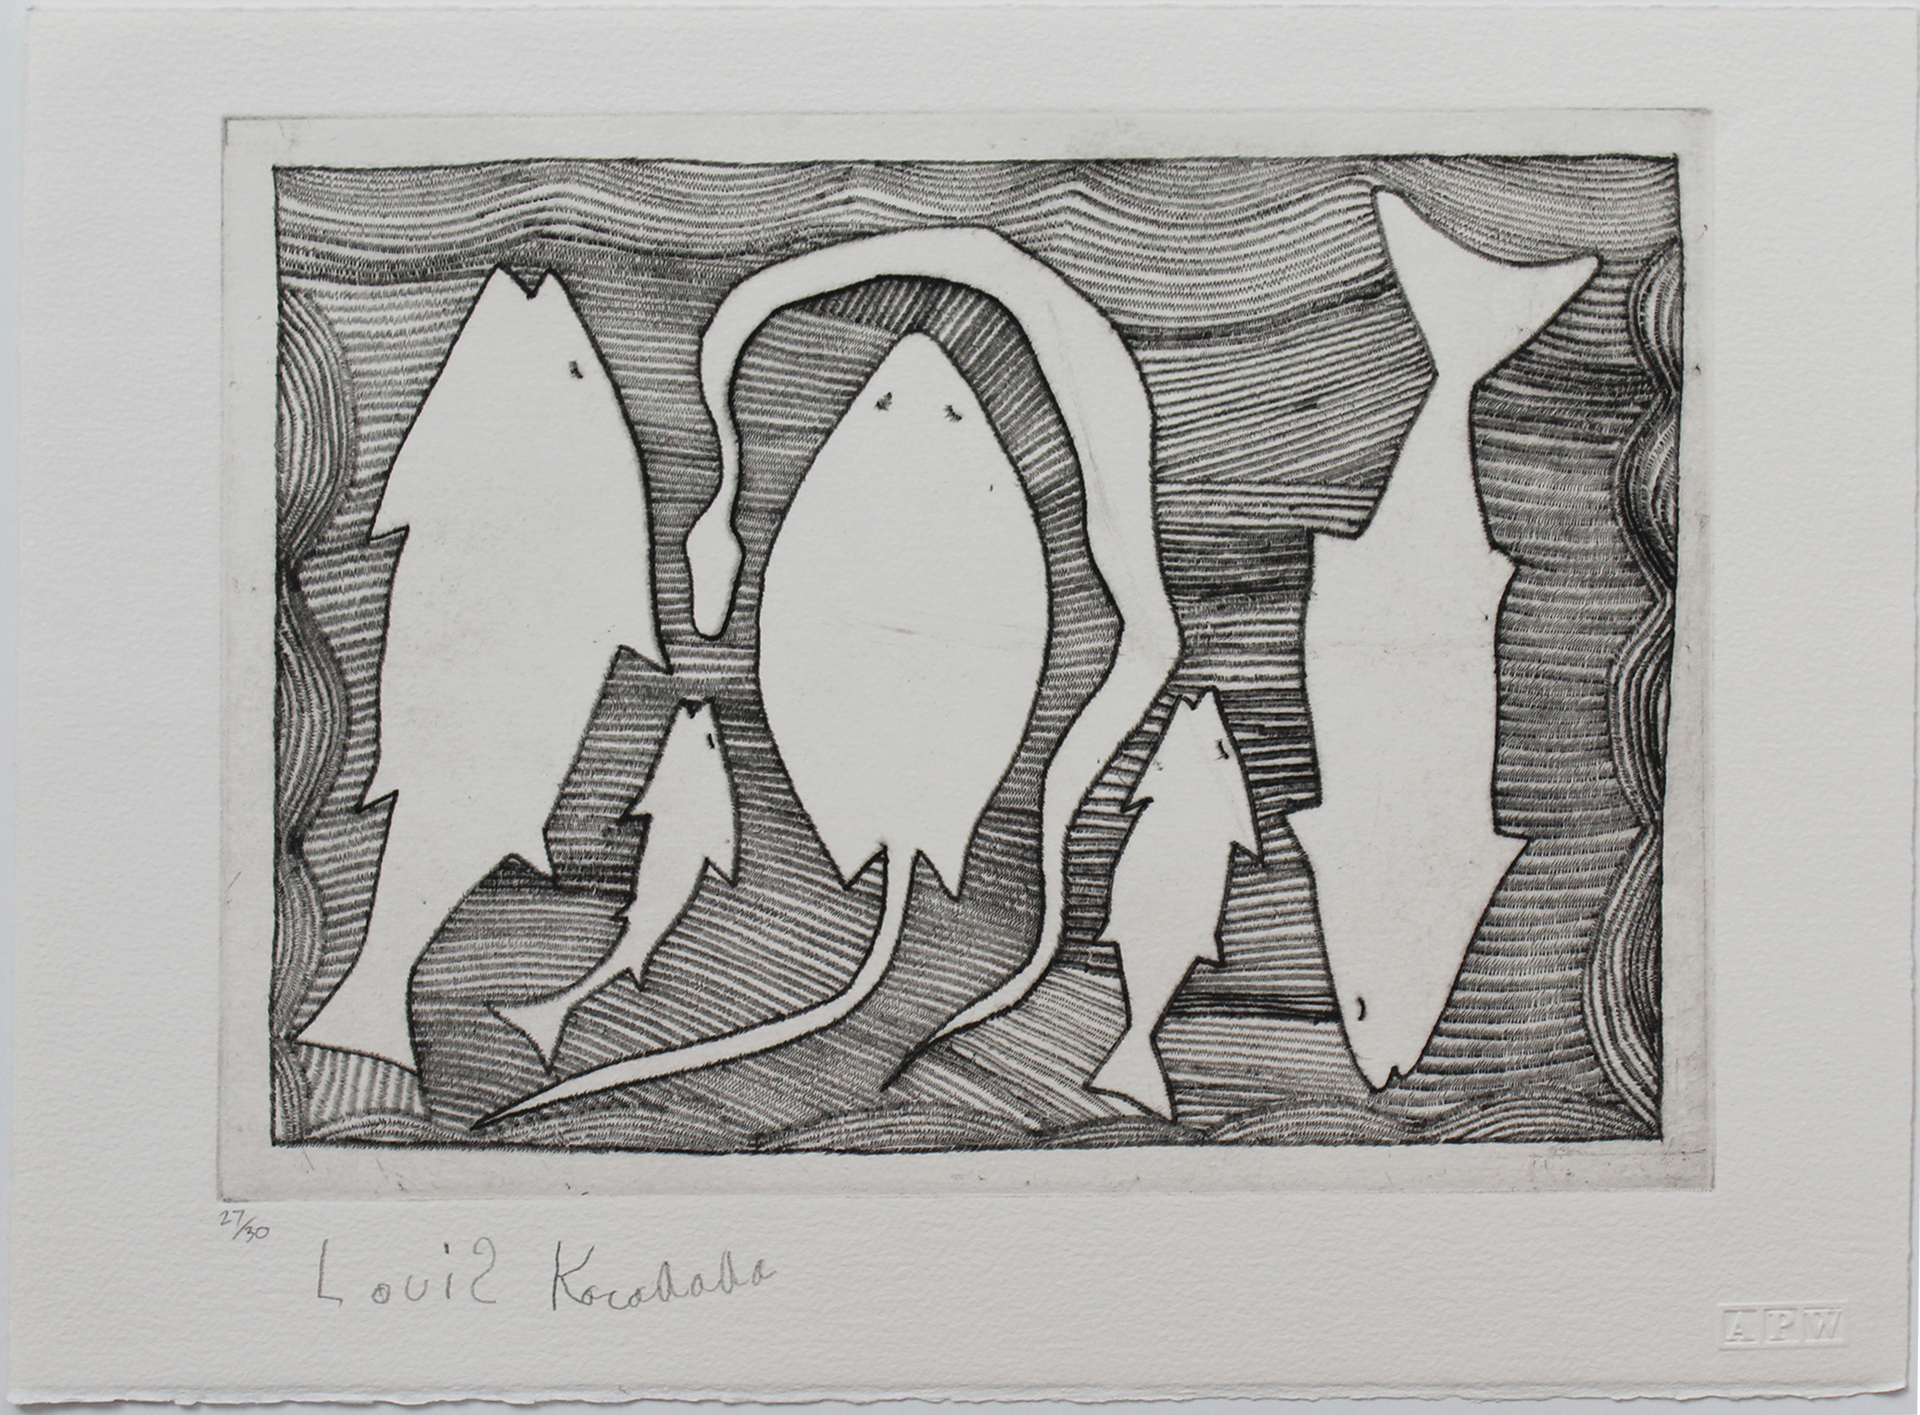 Fish Stringray & Snake by Louis Karadada